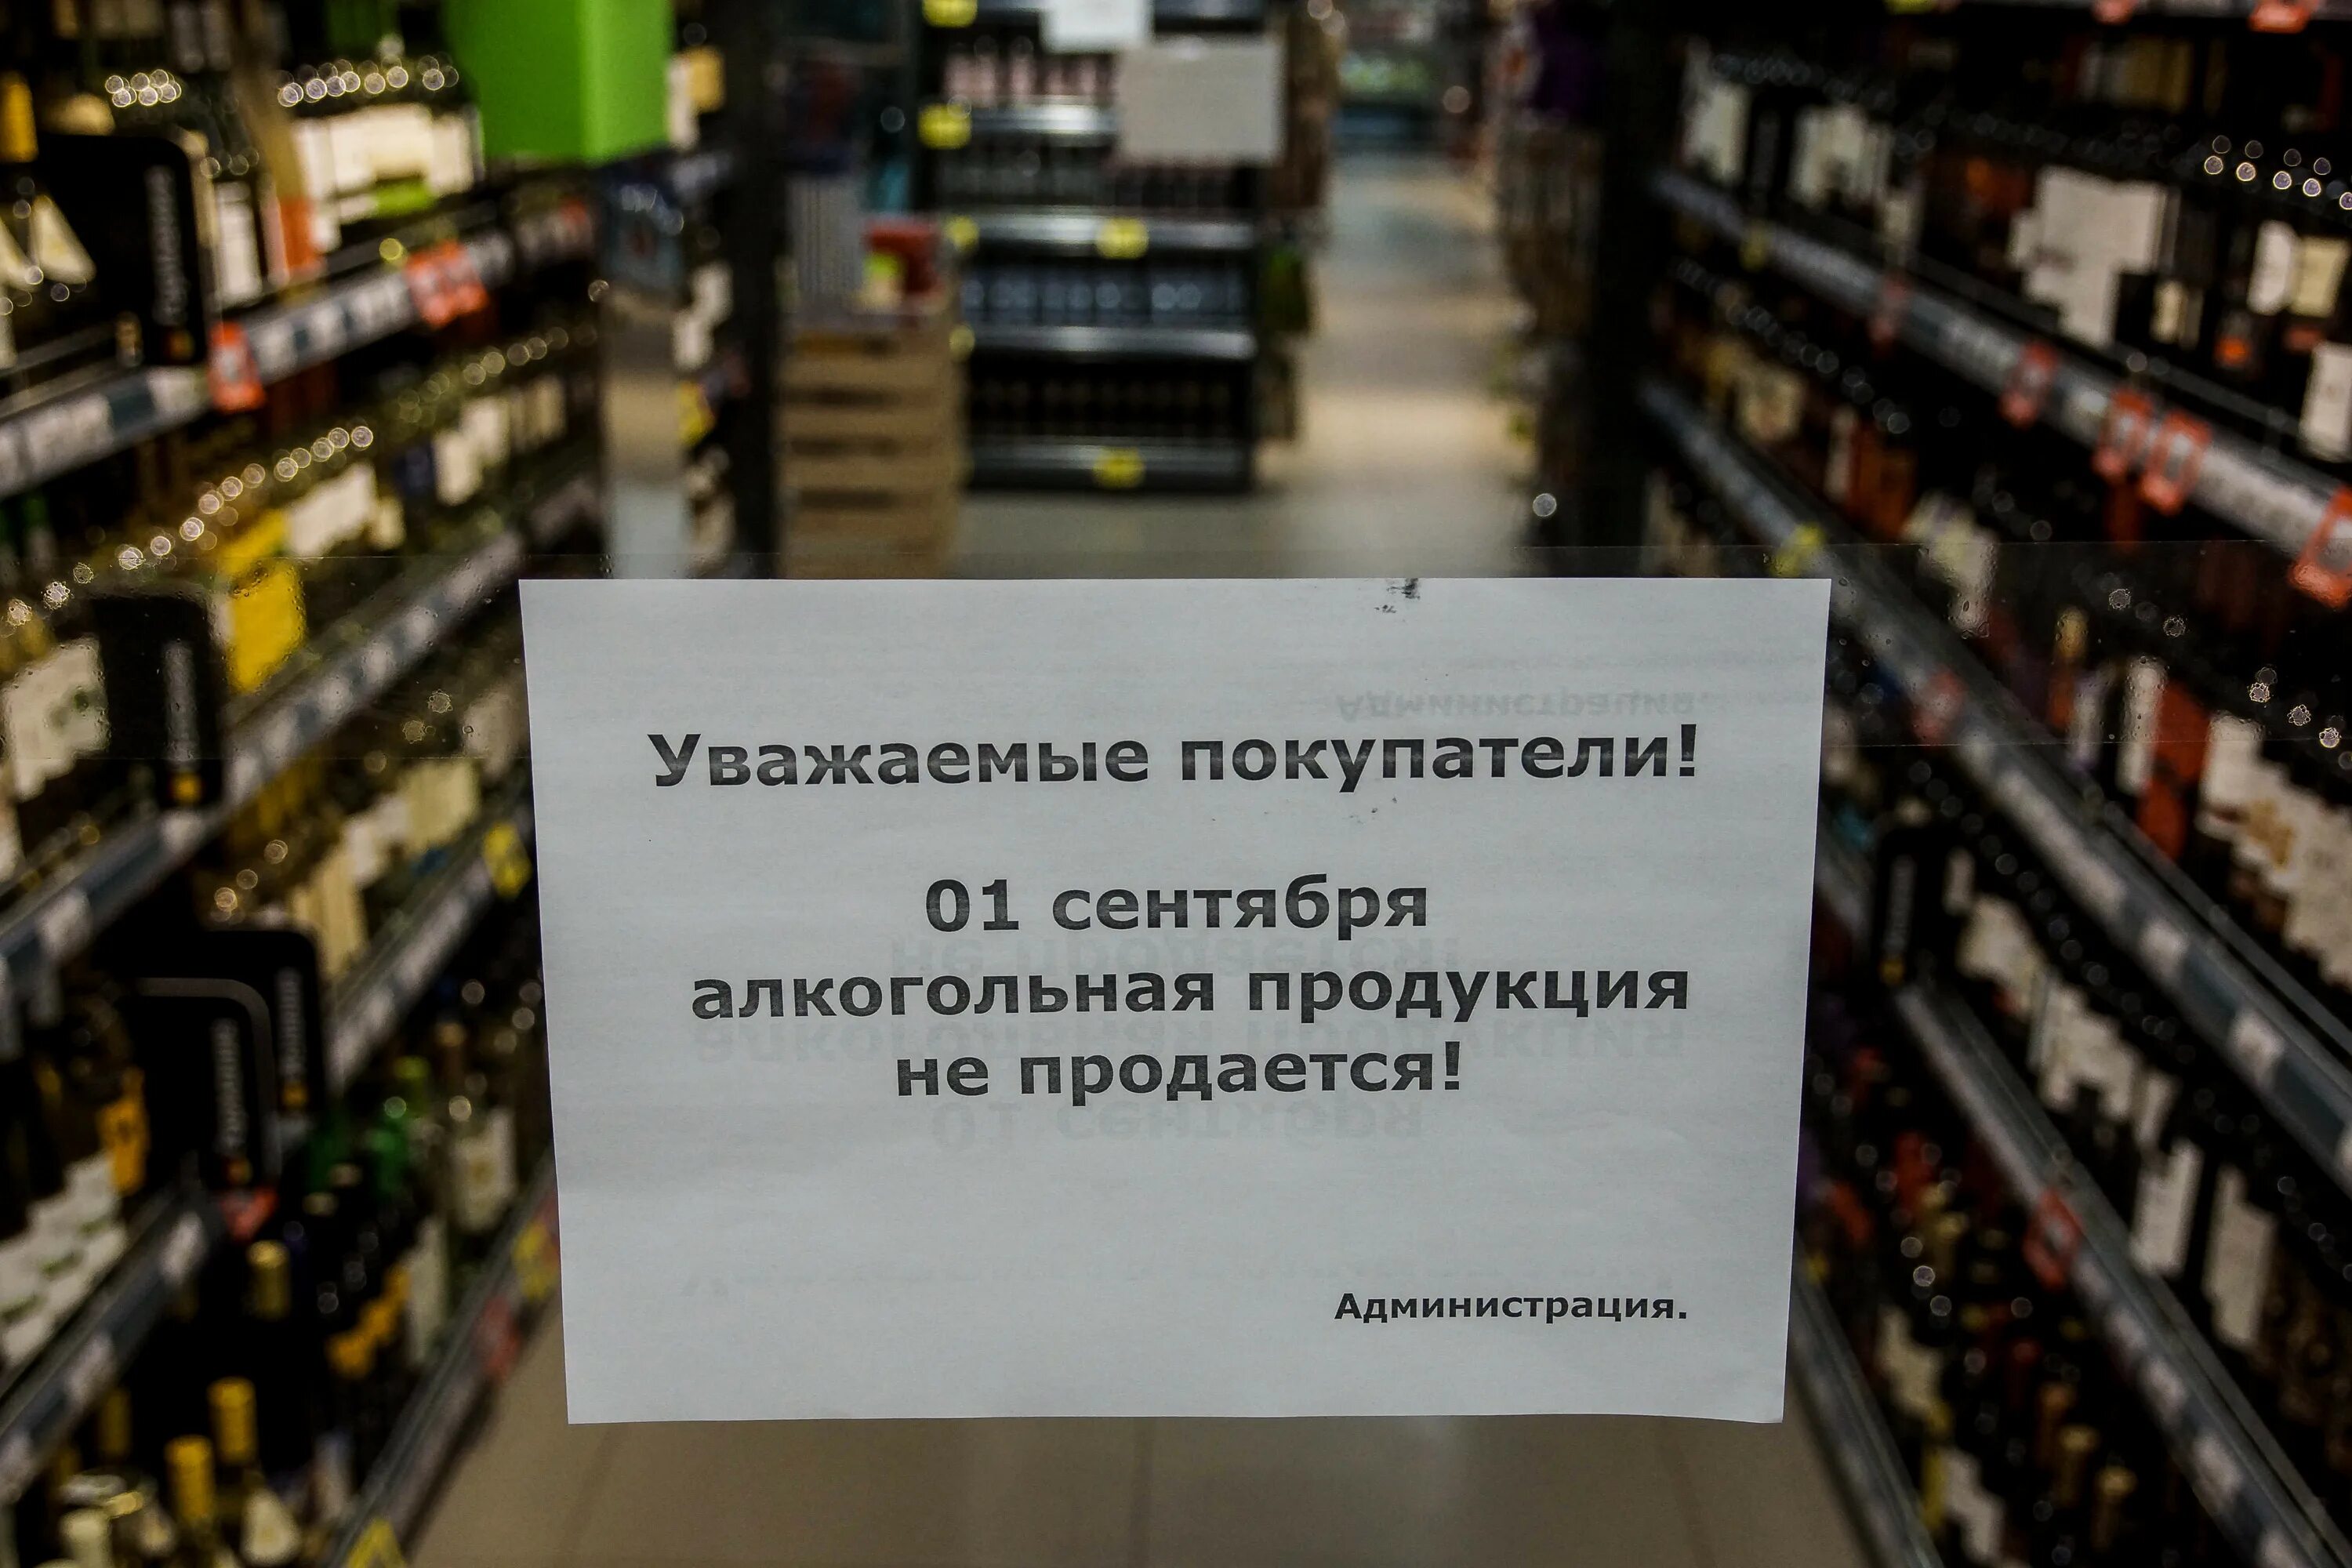 Какие напитки запретили. Торговля алкогольной продукцией. Запрет алкогольной продукции. Алкогольная продукция не продается.